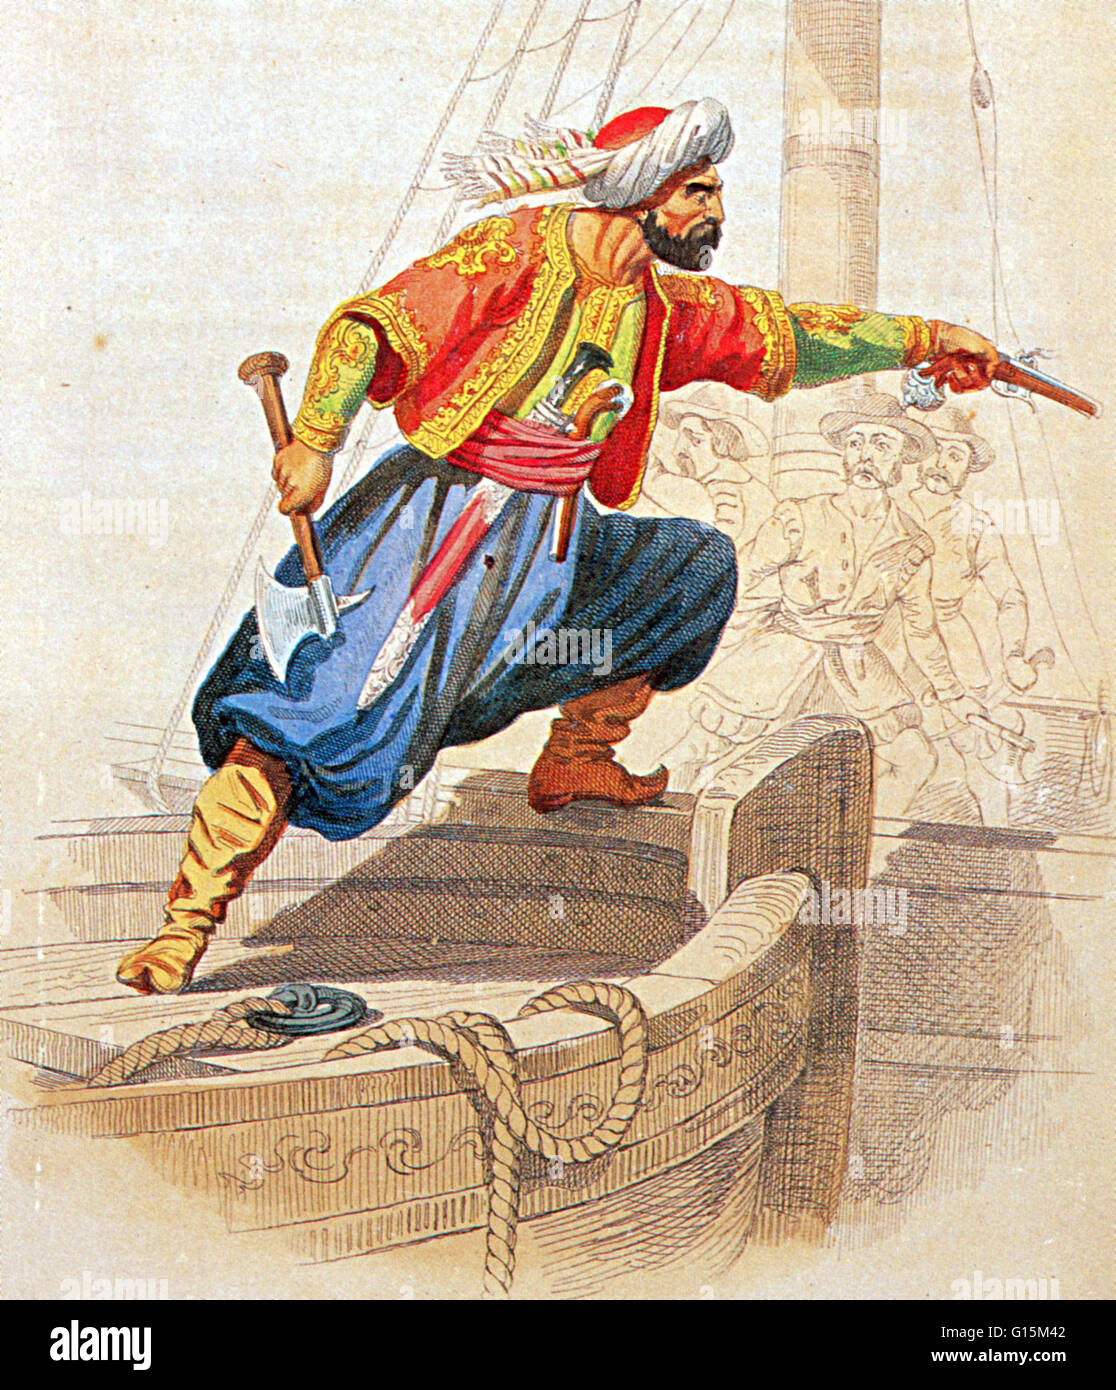 Ilustración de Turgut Reis preparándose para el abordaje de un barco enemigo. Turgut Reis (1485-1565) fue un almirante otomano y privateer. Bajo su mando naval marítima el Imperio Otomano se extendió a lo largo de África del Norte. Cuando Turgut servía como Pasha, Foto de stock